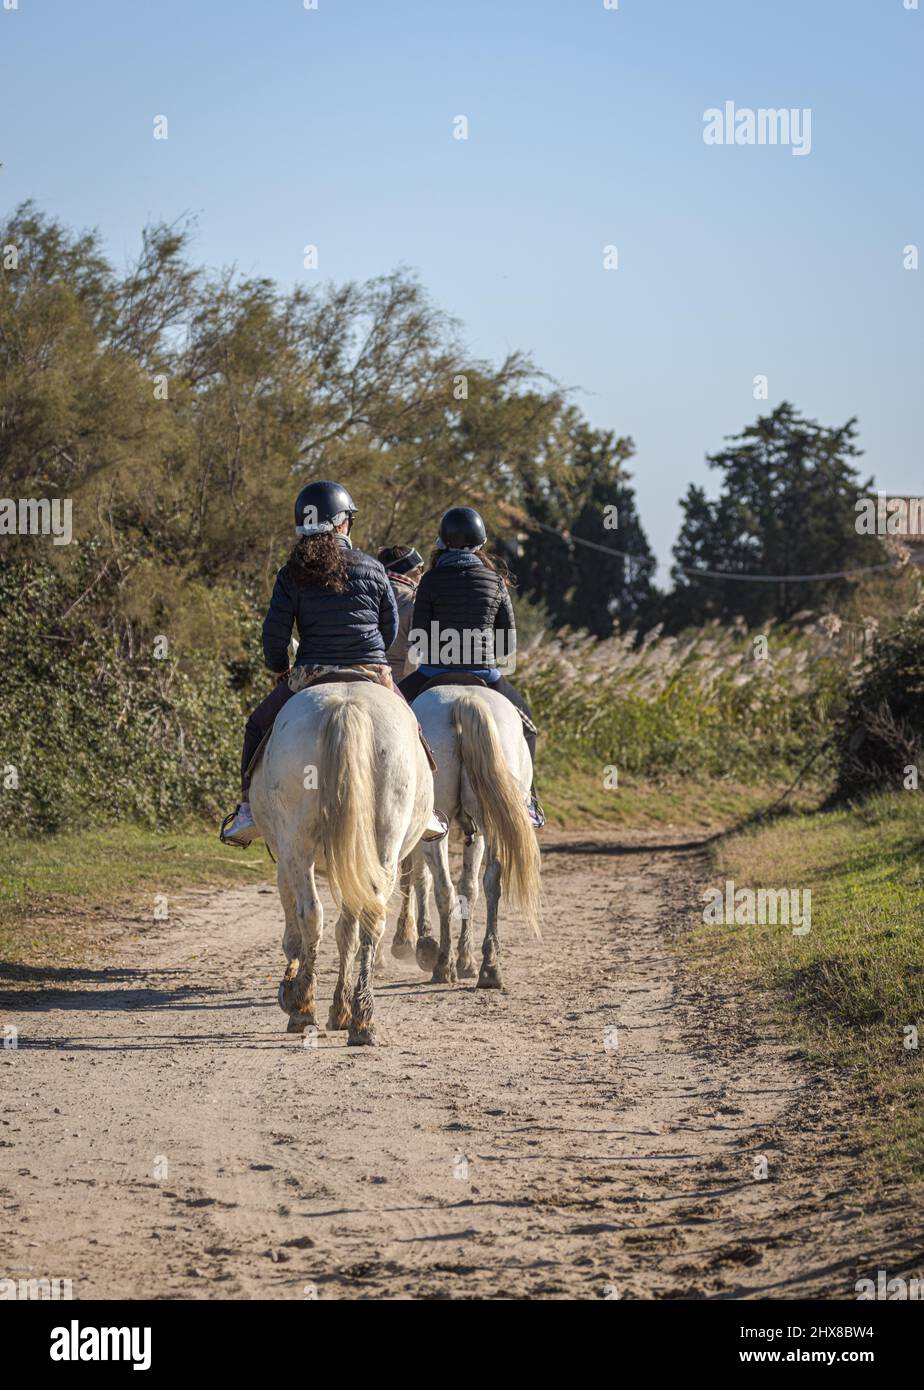 Jinetes en caballos blancos Camargue (Cavallo del Delta), Camargue, Provenza, Francia Foto de stock